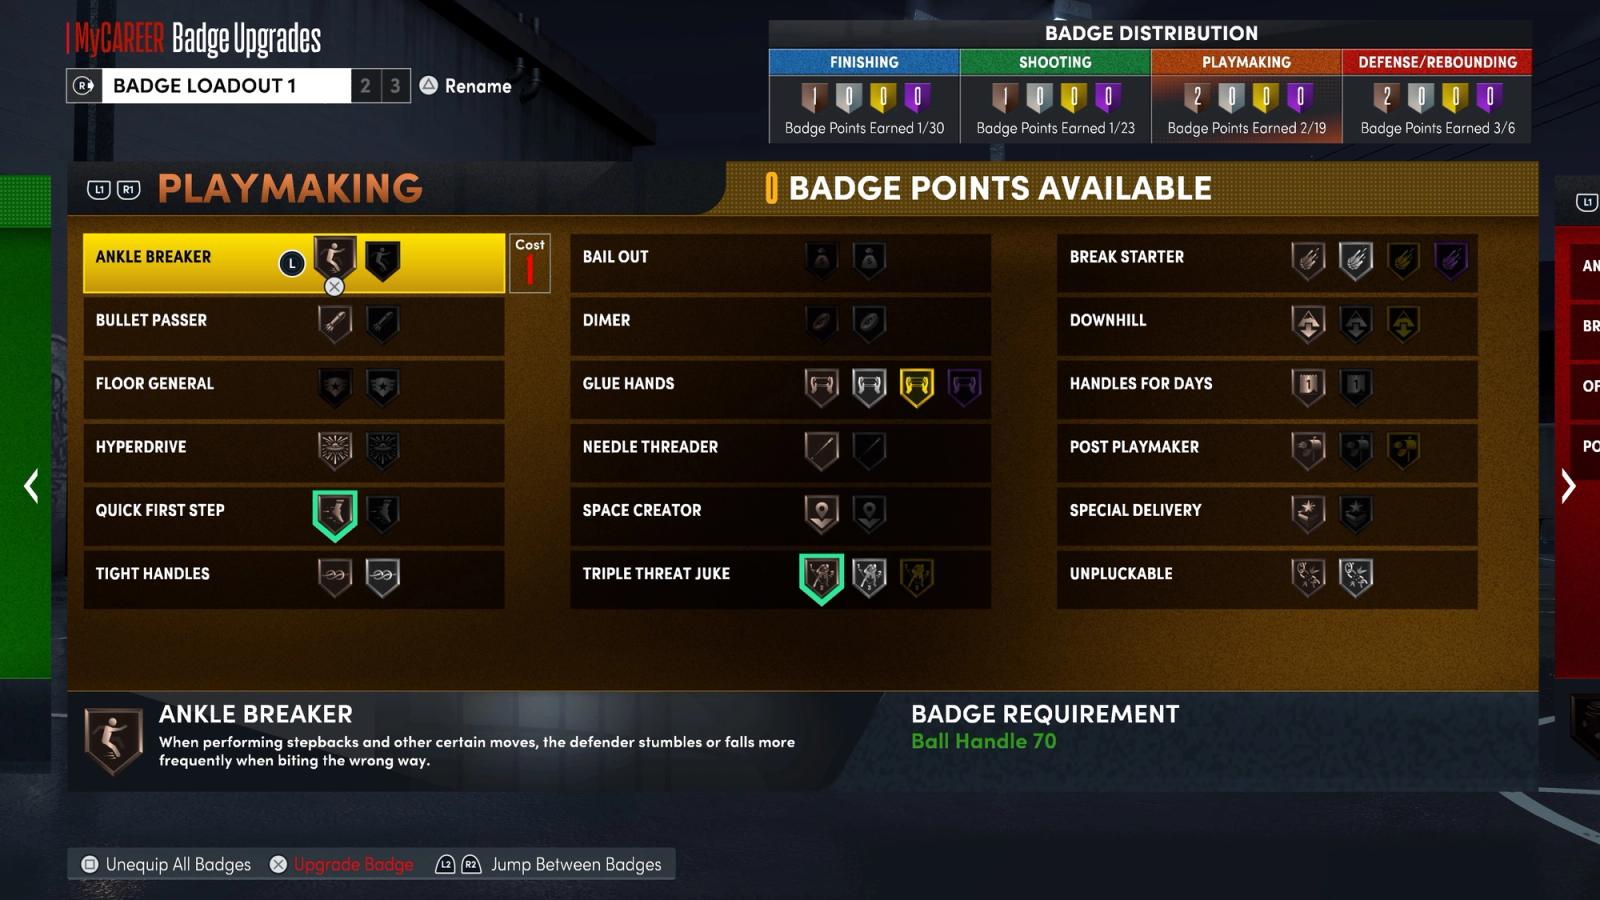 Badges screen in NBA 2K22